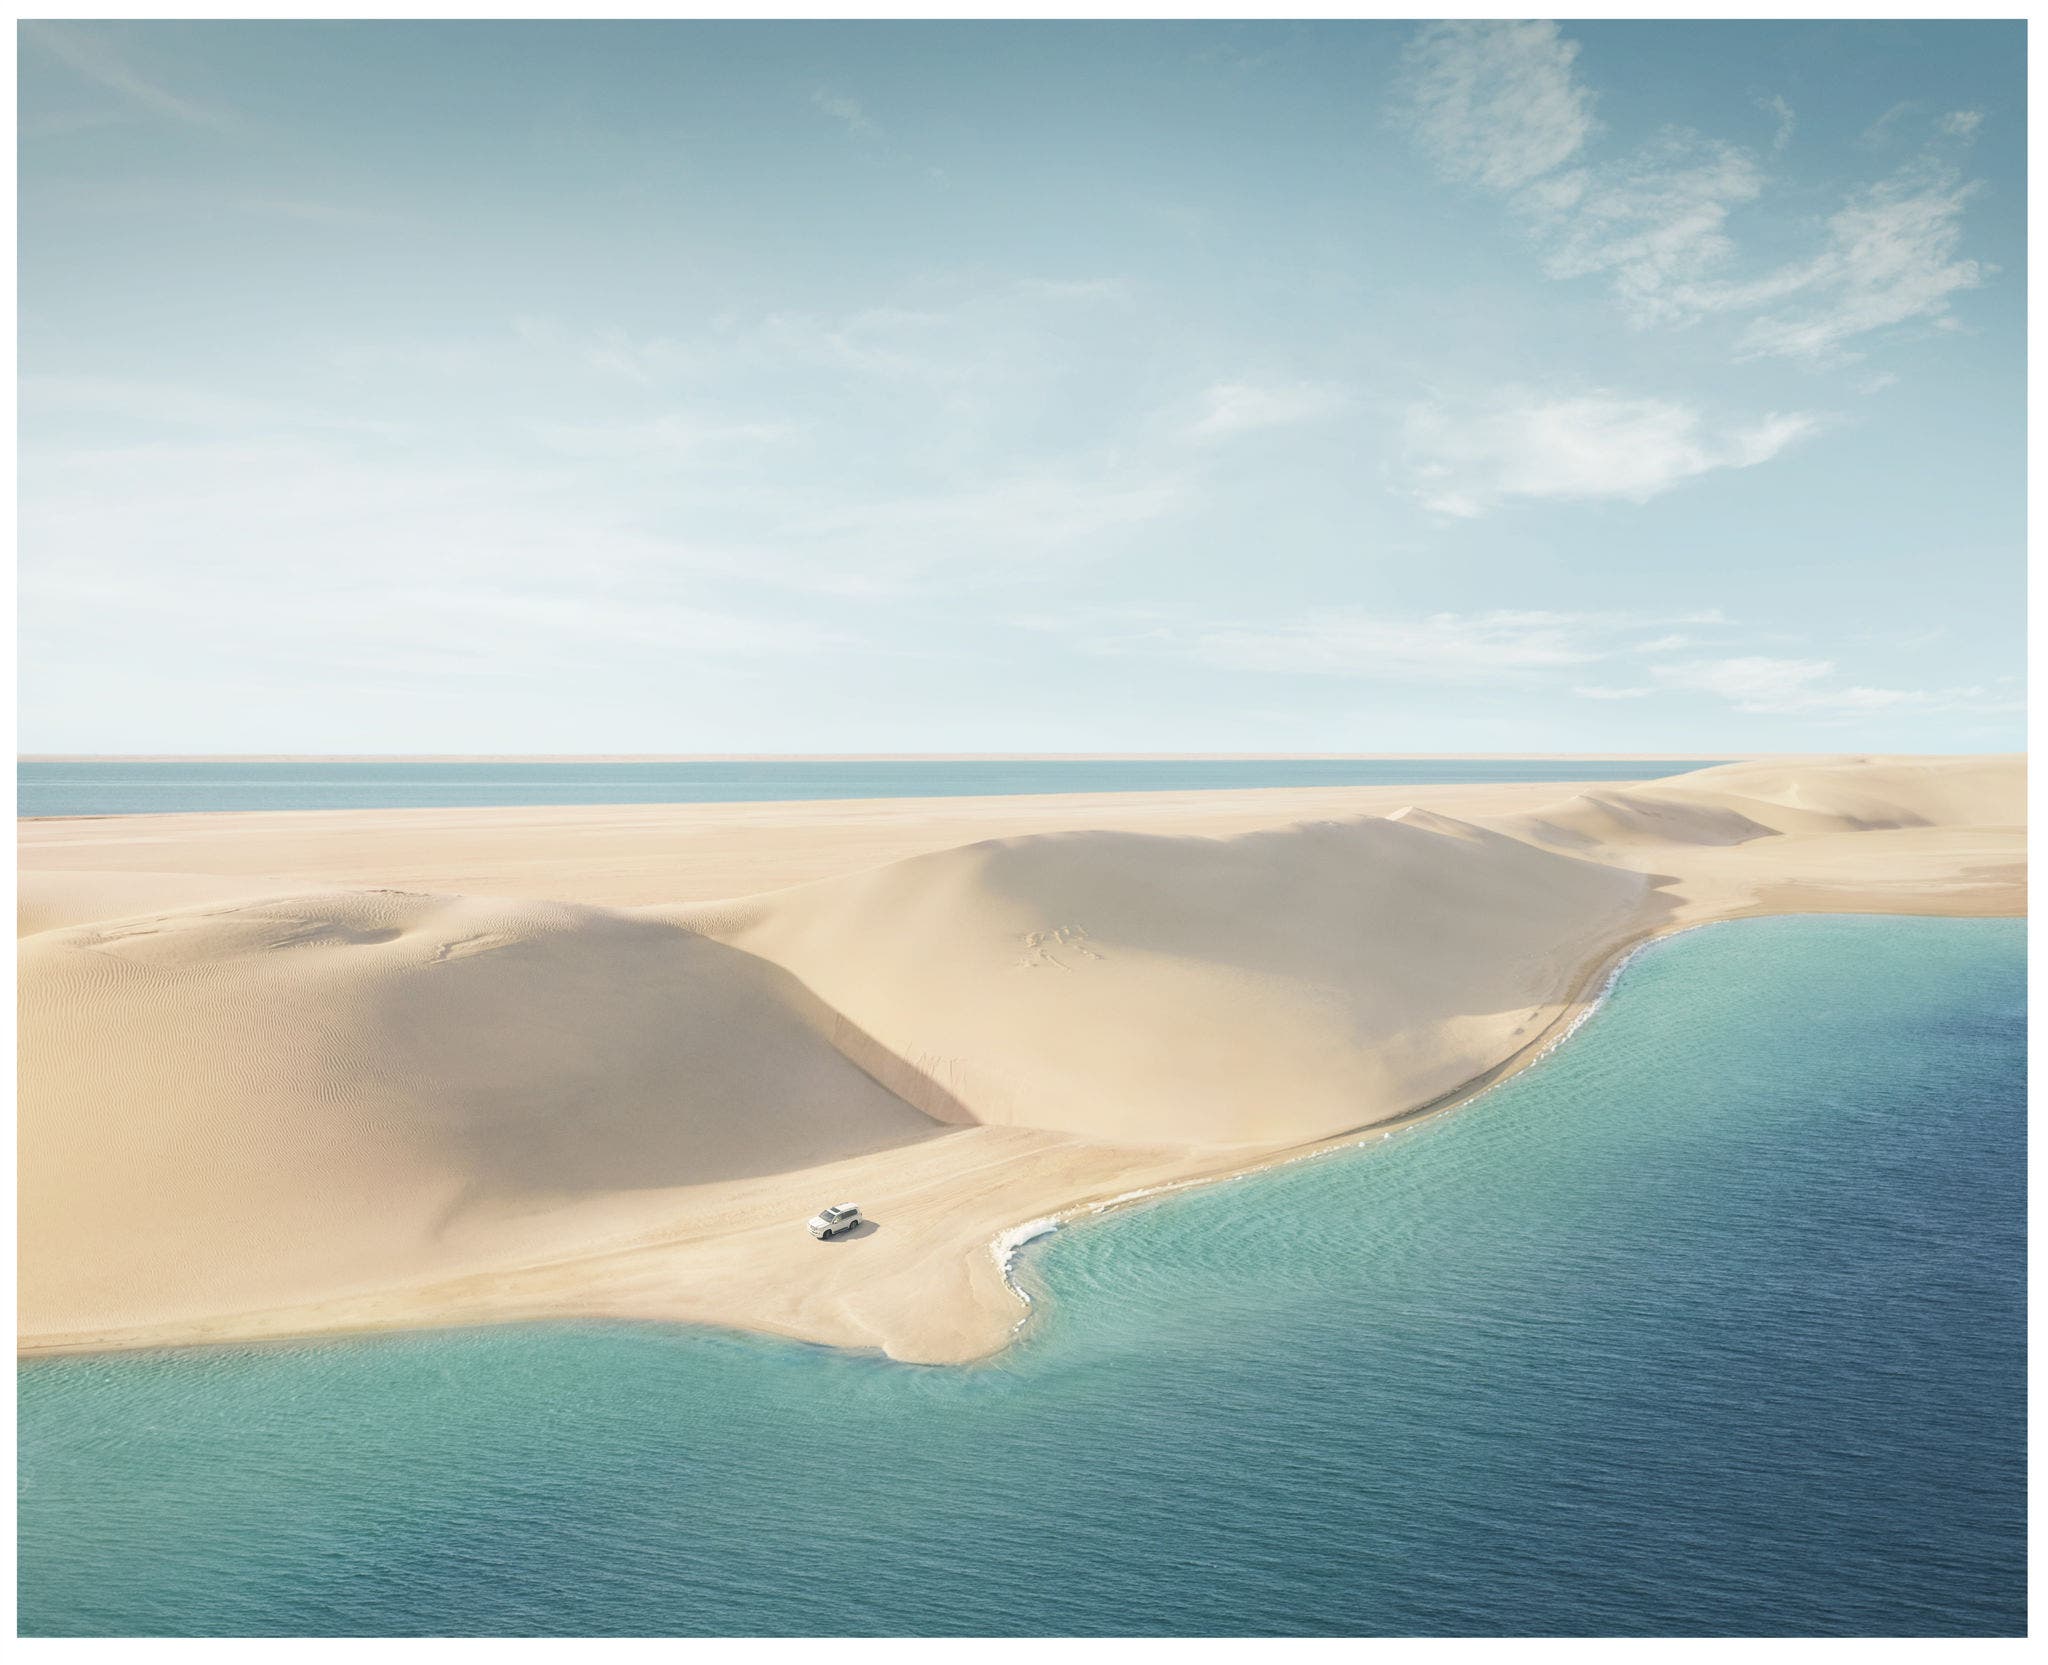 Inland Sea (Khor al Udaid) – Ganztägige Wüstensafari